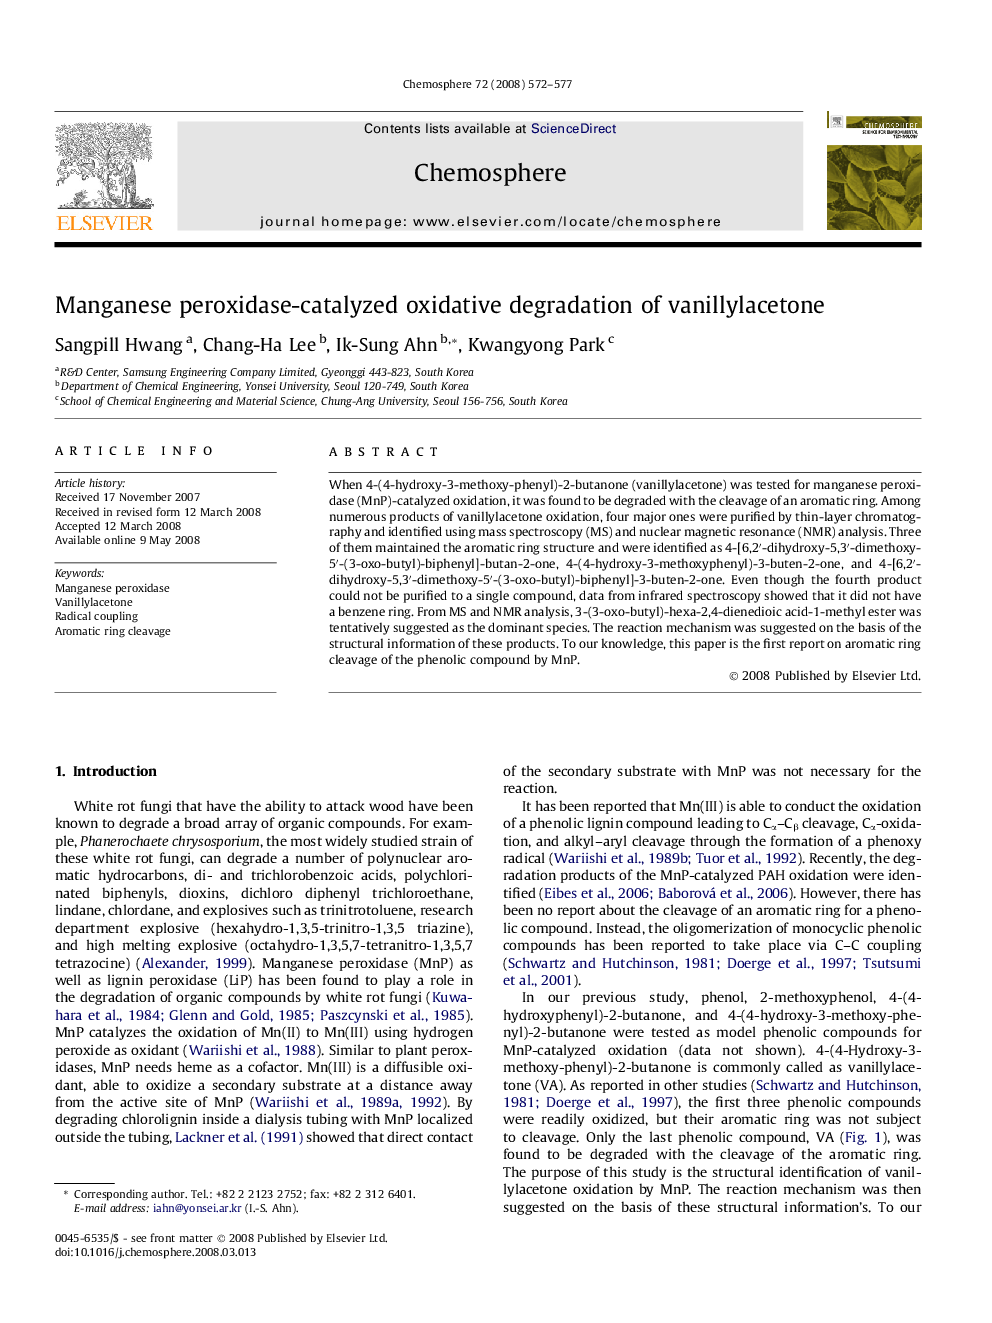 Manganese peroxidase-catalyzed oxidative degradation of vanillylacetone